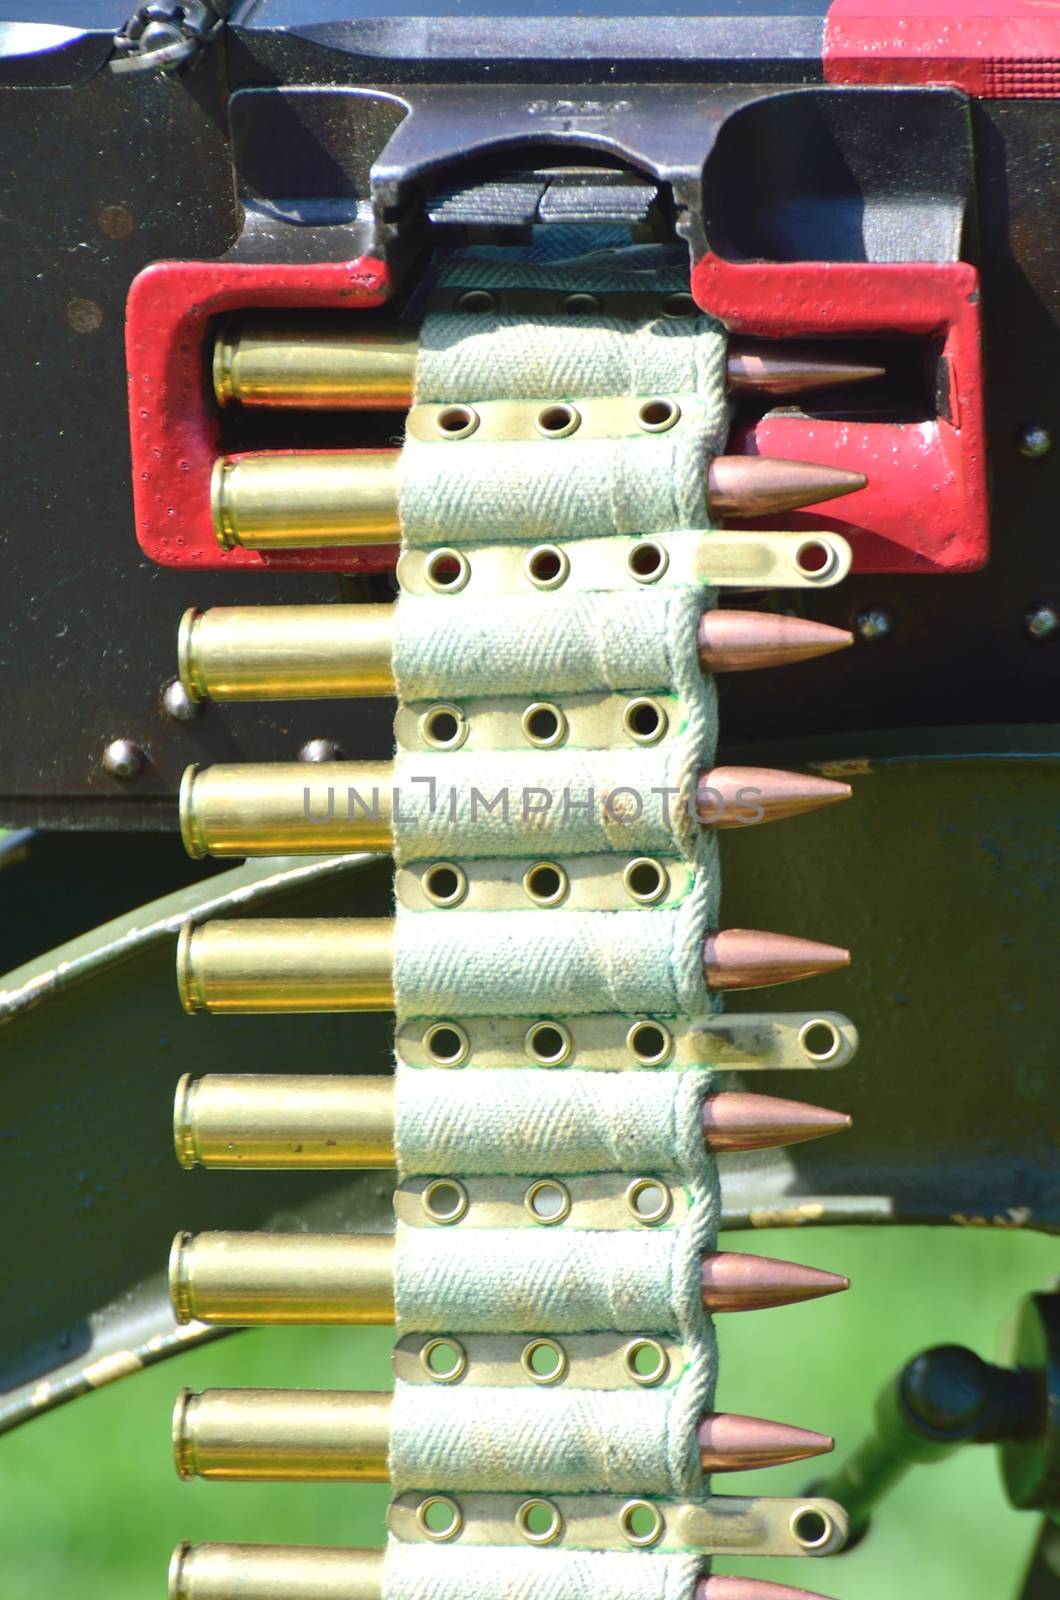 Machine gun bullets on belt by pauws99